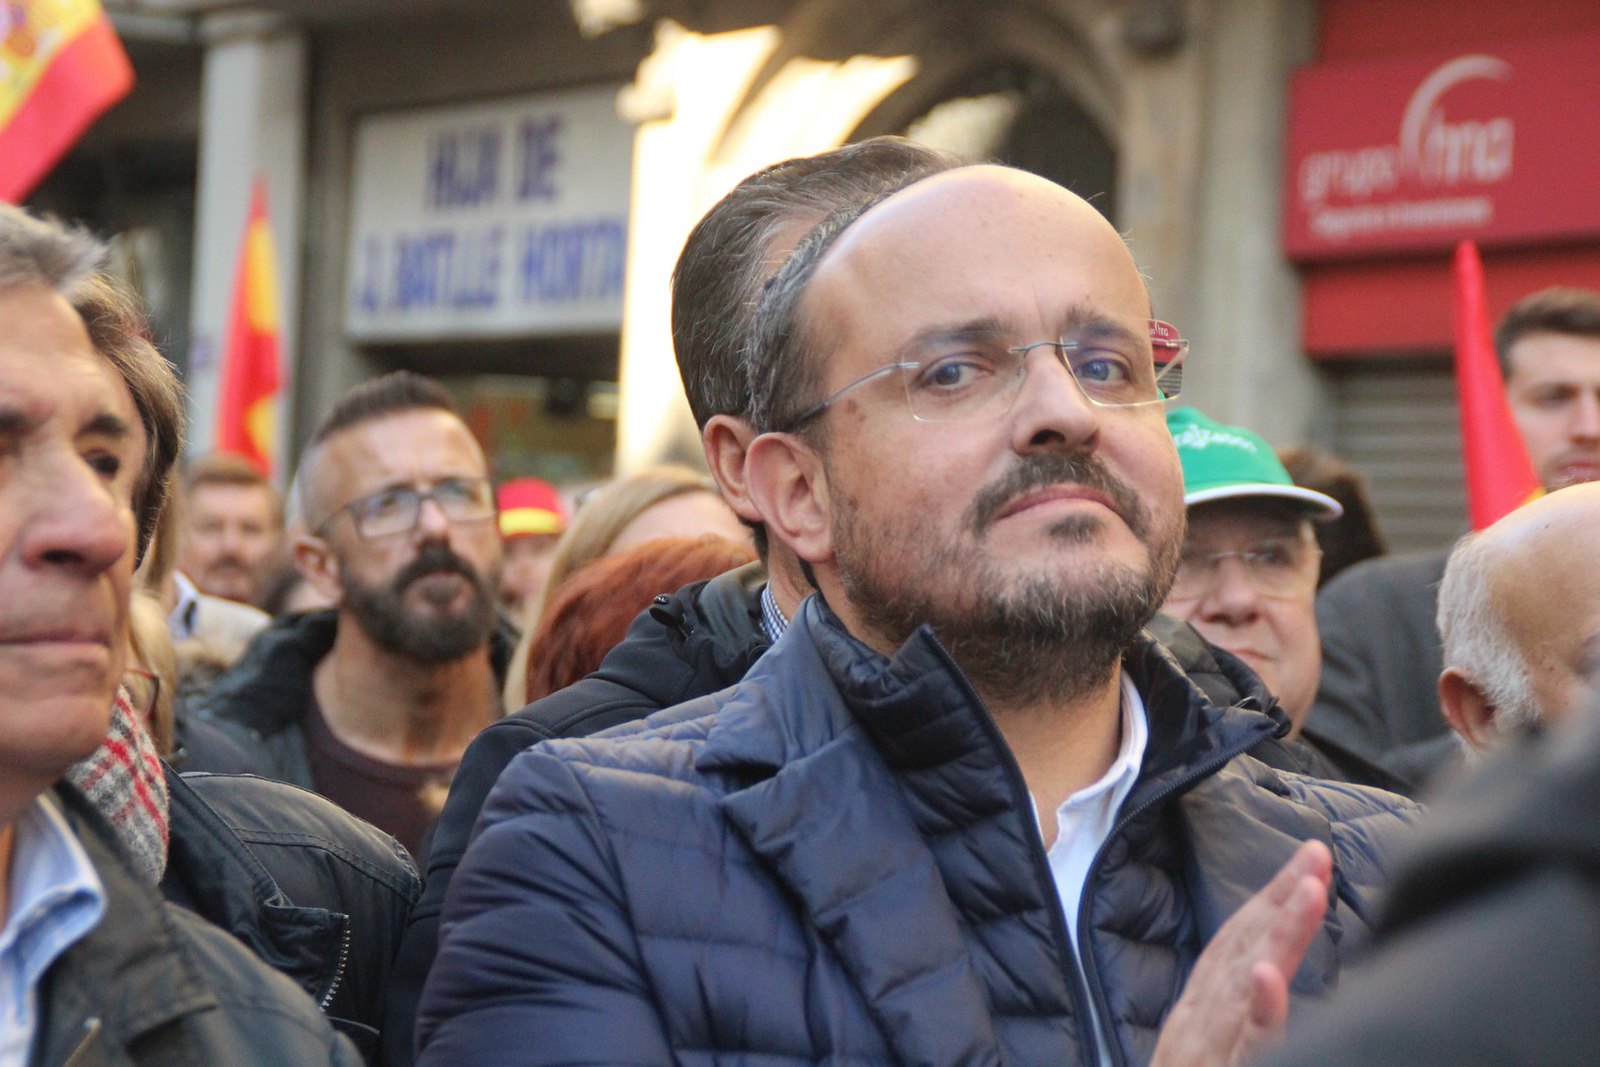 FOTOGRAFÍA. BARCELONA (ESPAÑA), 06.12.2019. Varios miles de personas se manifiestan en Barcelona a favor de la unidad de España. Ñ Pueblo (25)